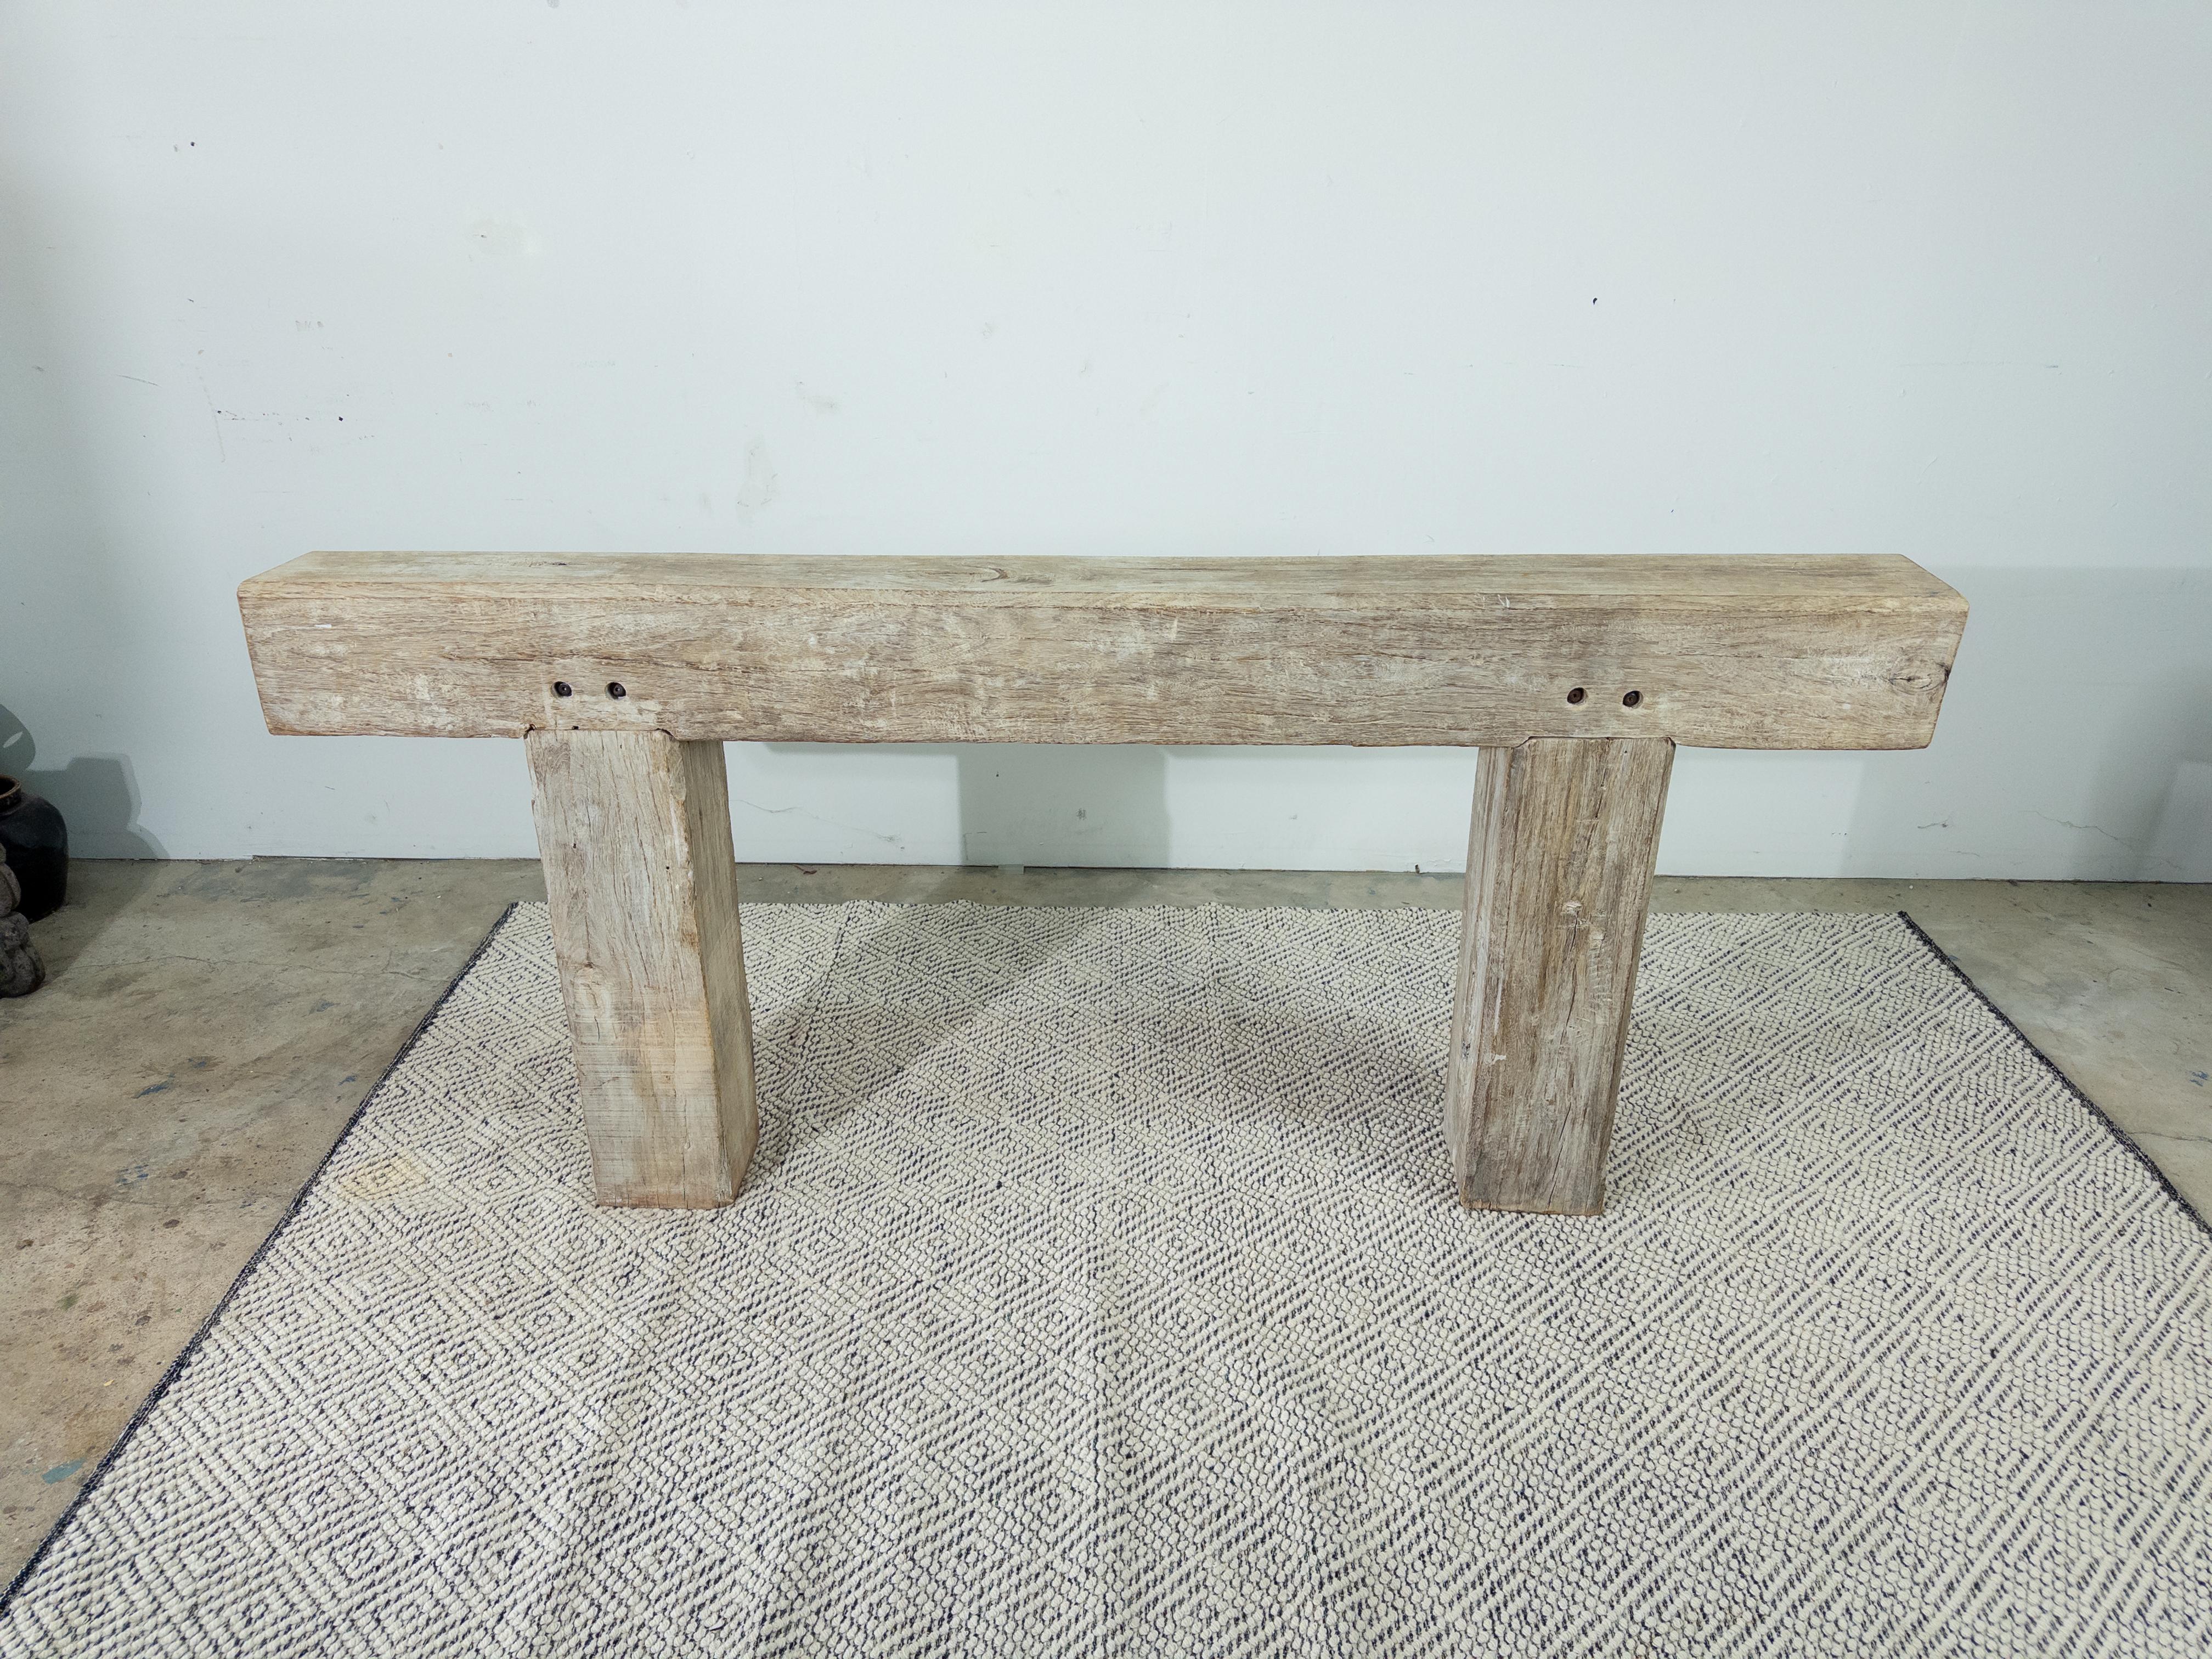 La table console Beam en bois blanchi dégage un charme rustique avec une touche d'élégance moderne. Fabriquée à partir de poutres en bois massif, méticuleusement blanchies pour mettre en valeur les motifs naturels du grain, cette table console